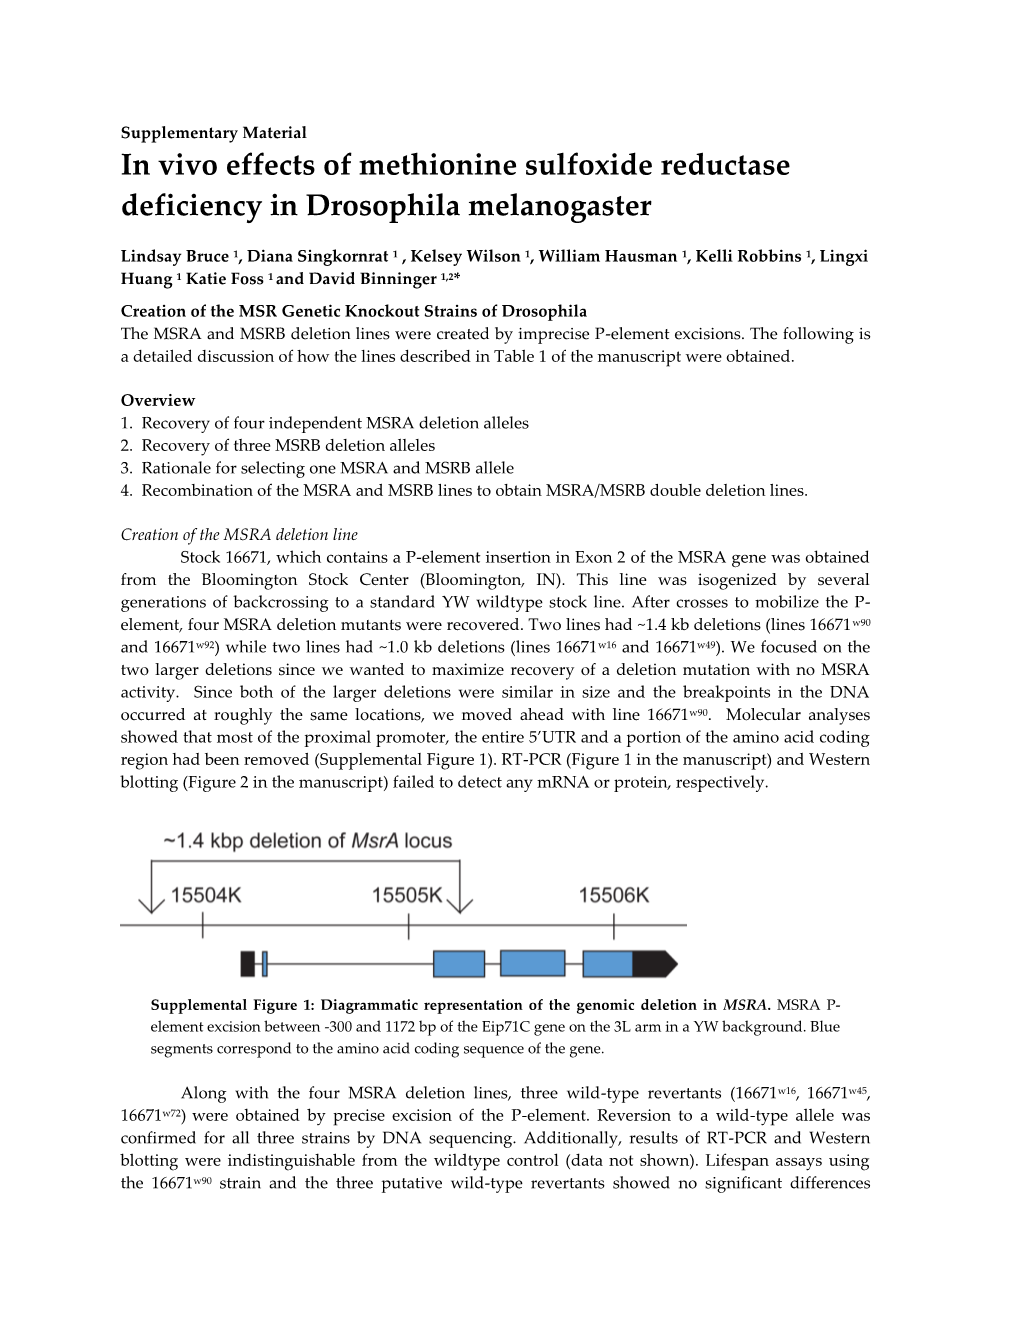 In Vivo Effects of Methionine Sulfoxide Reductase Deficiency in Drosophila Melanogaster